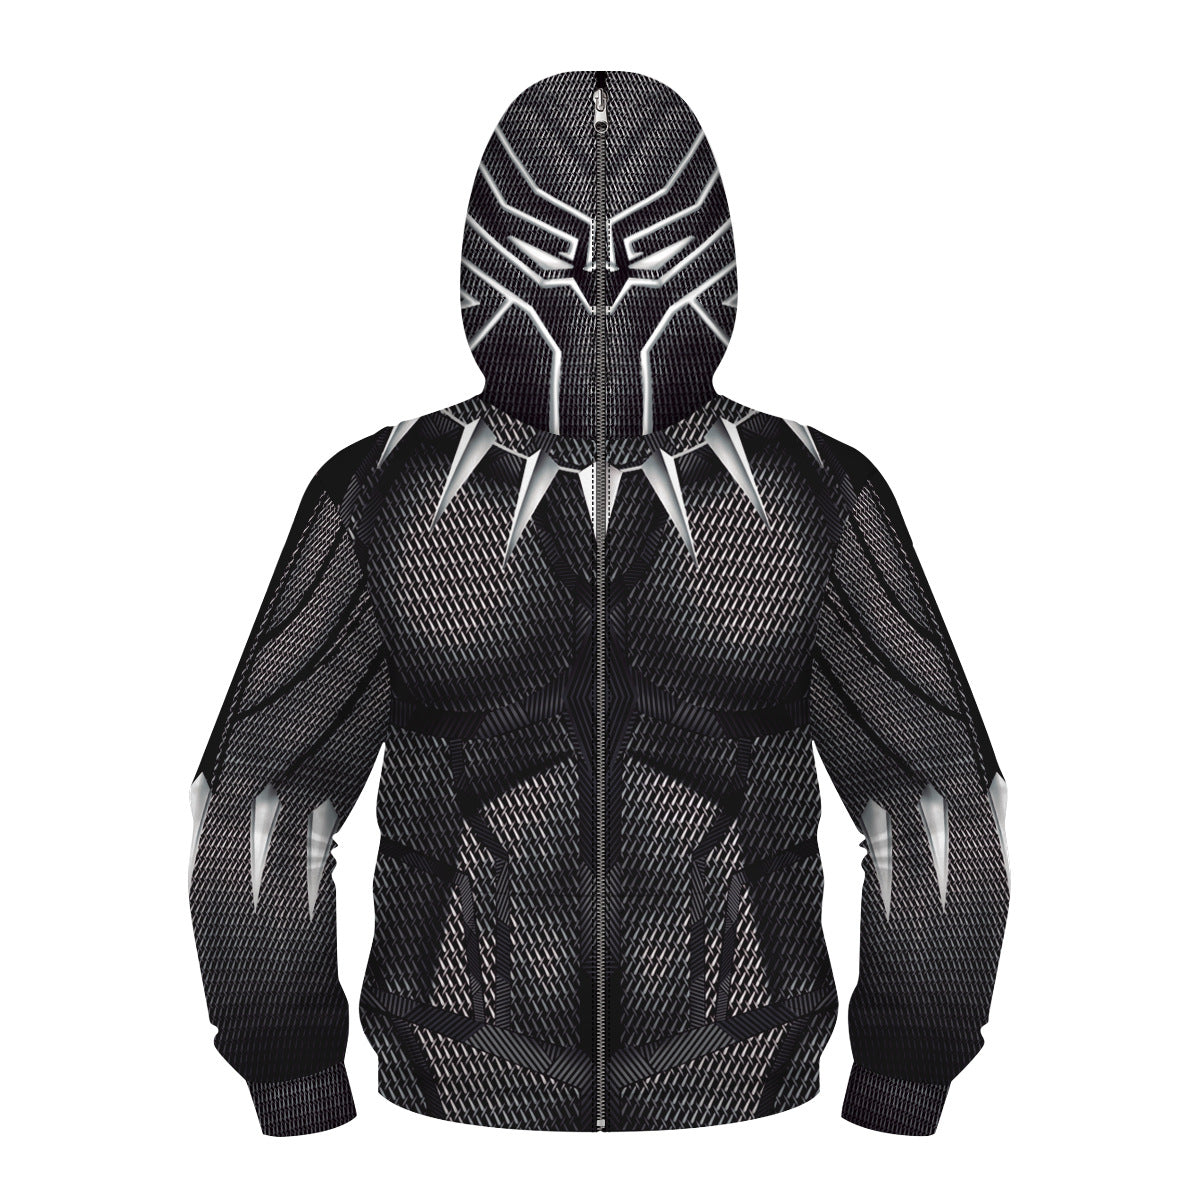 Kids avengers black panther zip up hoodie Unisex Jacket - mihoodie